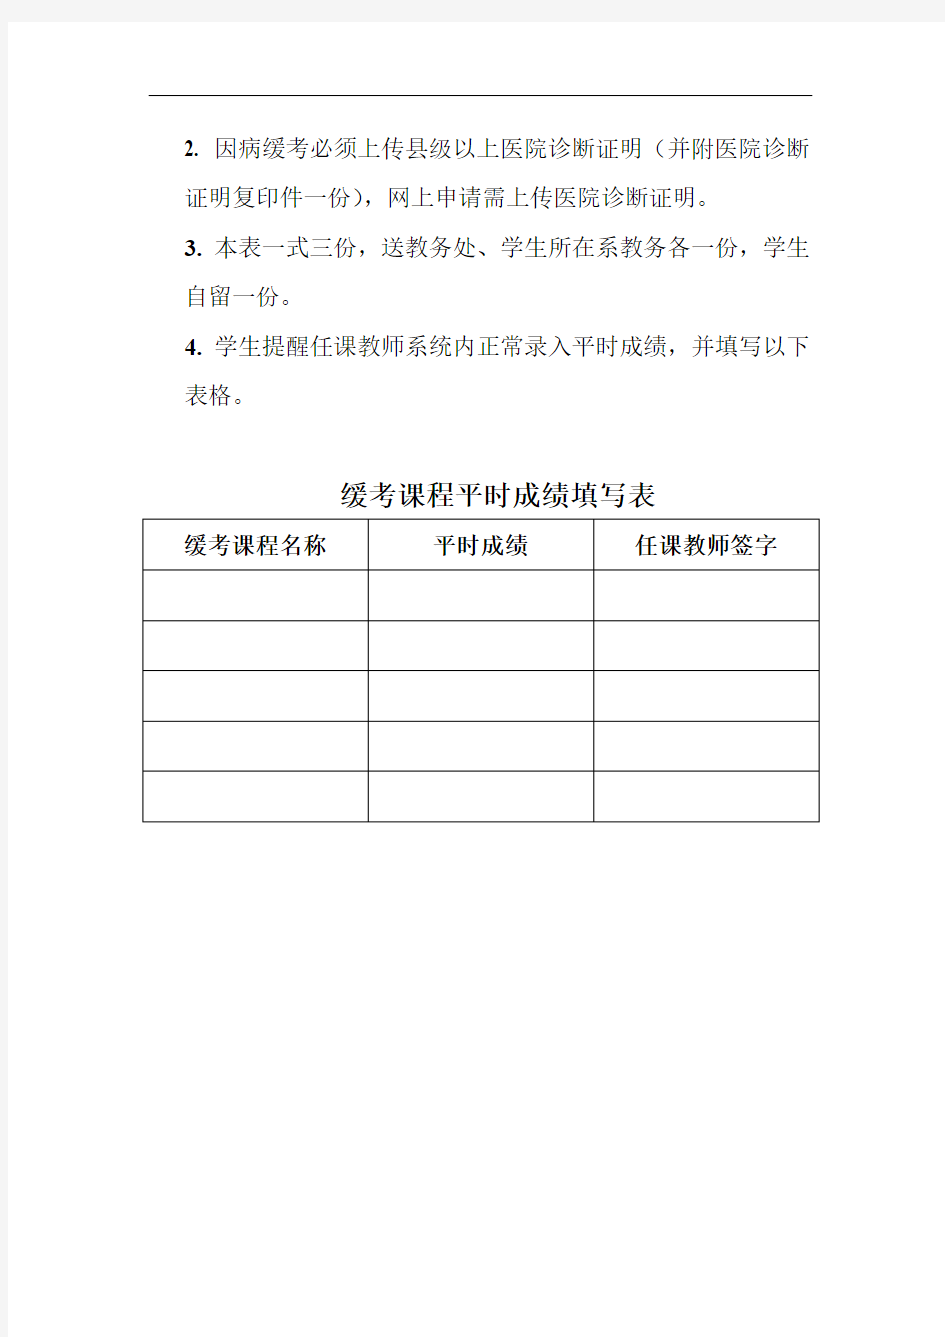 中国矿业大学徐海学院缓考申请表